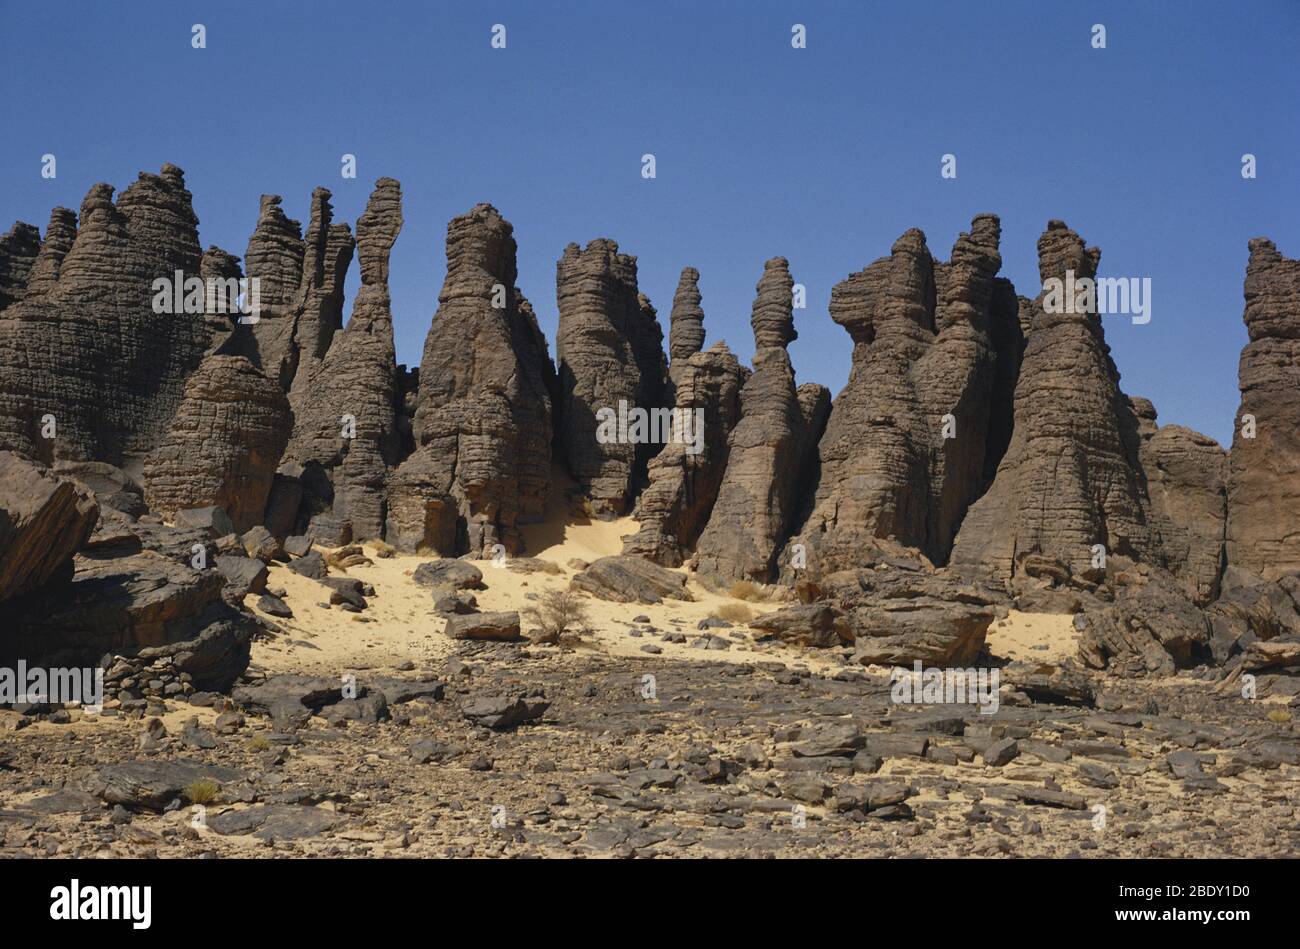 Roches érodées par le vent, Tassili n'Ajjer, dans le désert du Sahara, en Algérie. Banque D'Images